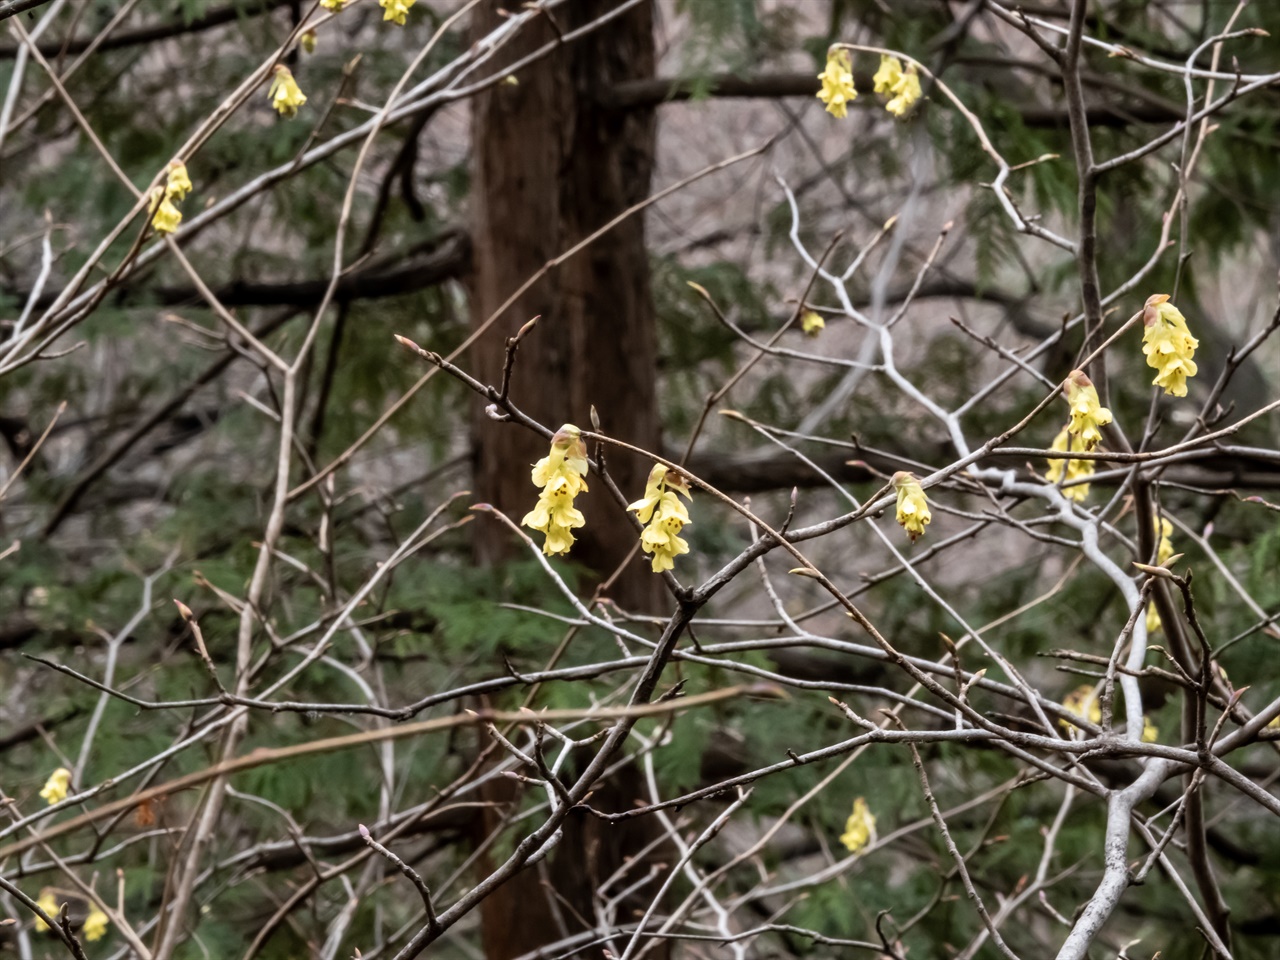 아직 덜 핀 꽃망울은 모양이 와사비 같았다. 매달려있는 노란 꽃에서 종소리가 들릴 듯하다.